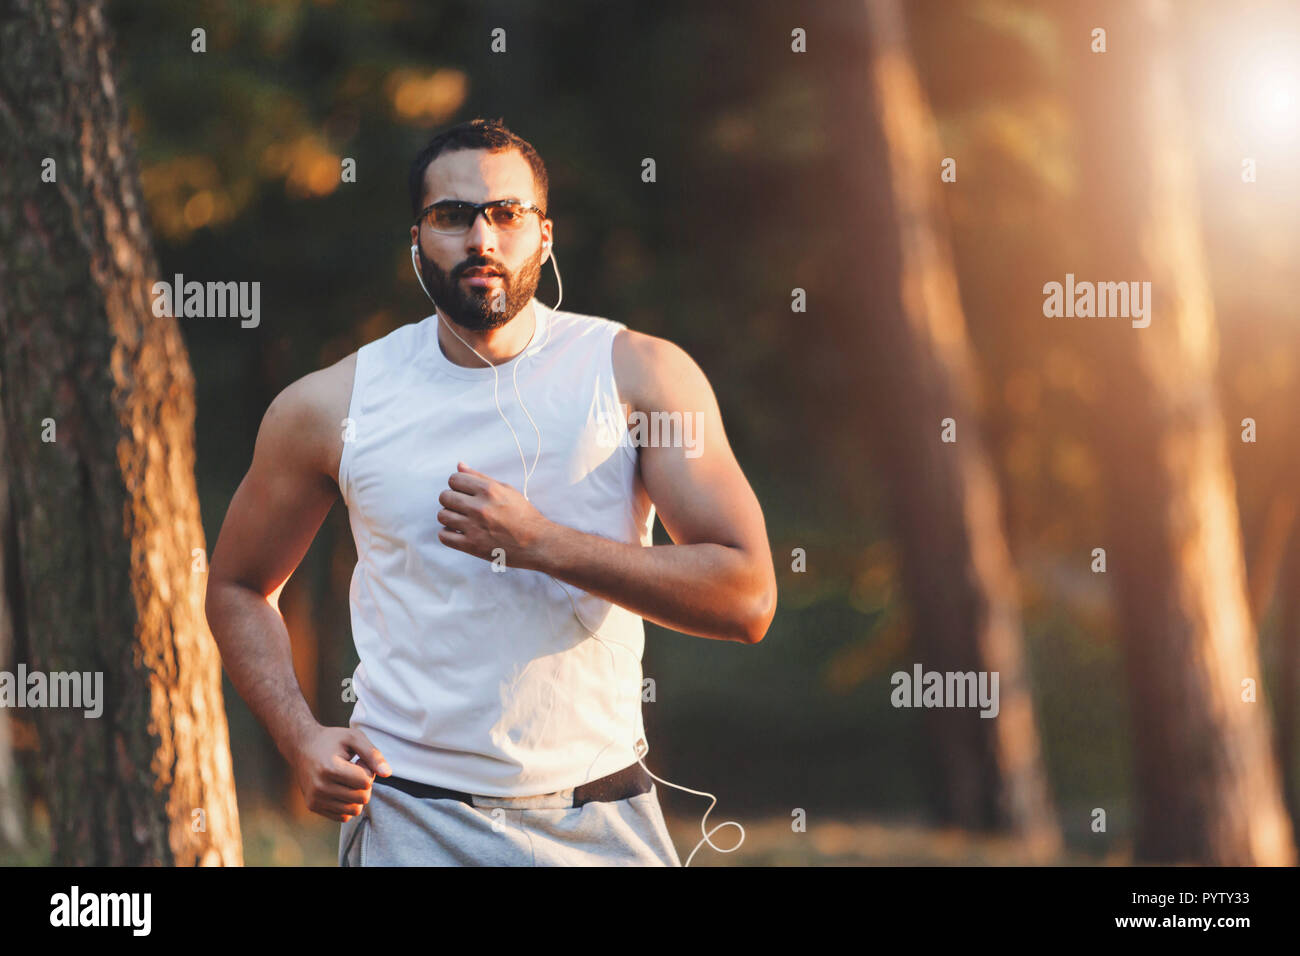 Multikulturelle aussehenden bärtigen Mann in Sportkleidung seine Lieblingsmusik hören und mit seinen Morgen im Wald laufen, gesunden Lebensstil und Personen Konzept Stockfoto